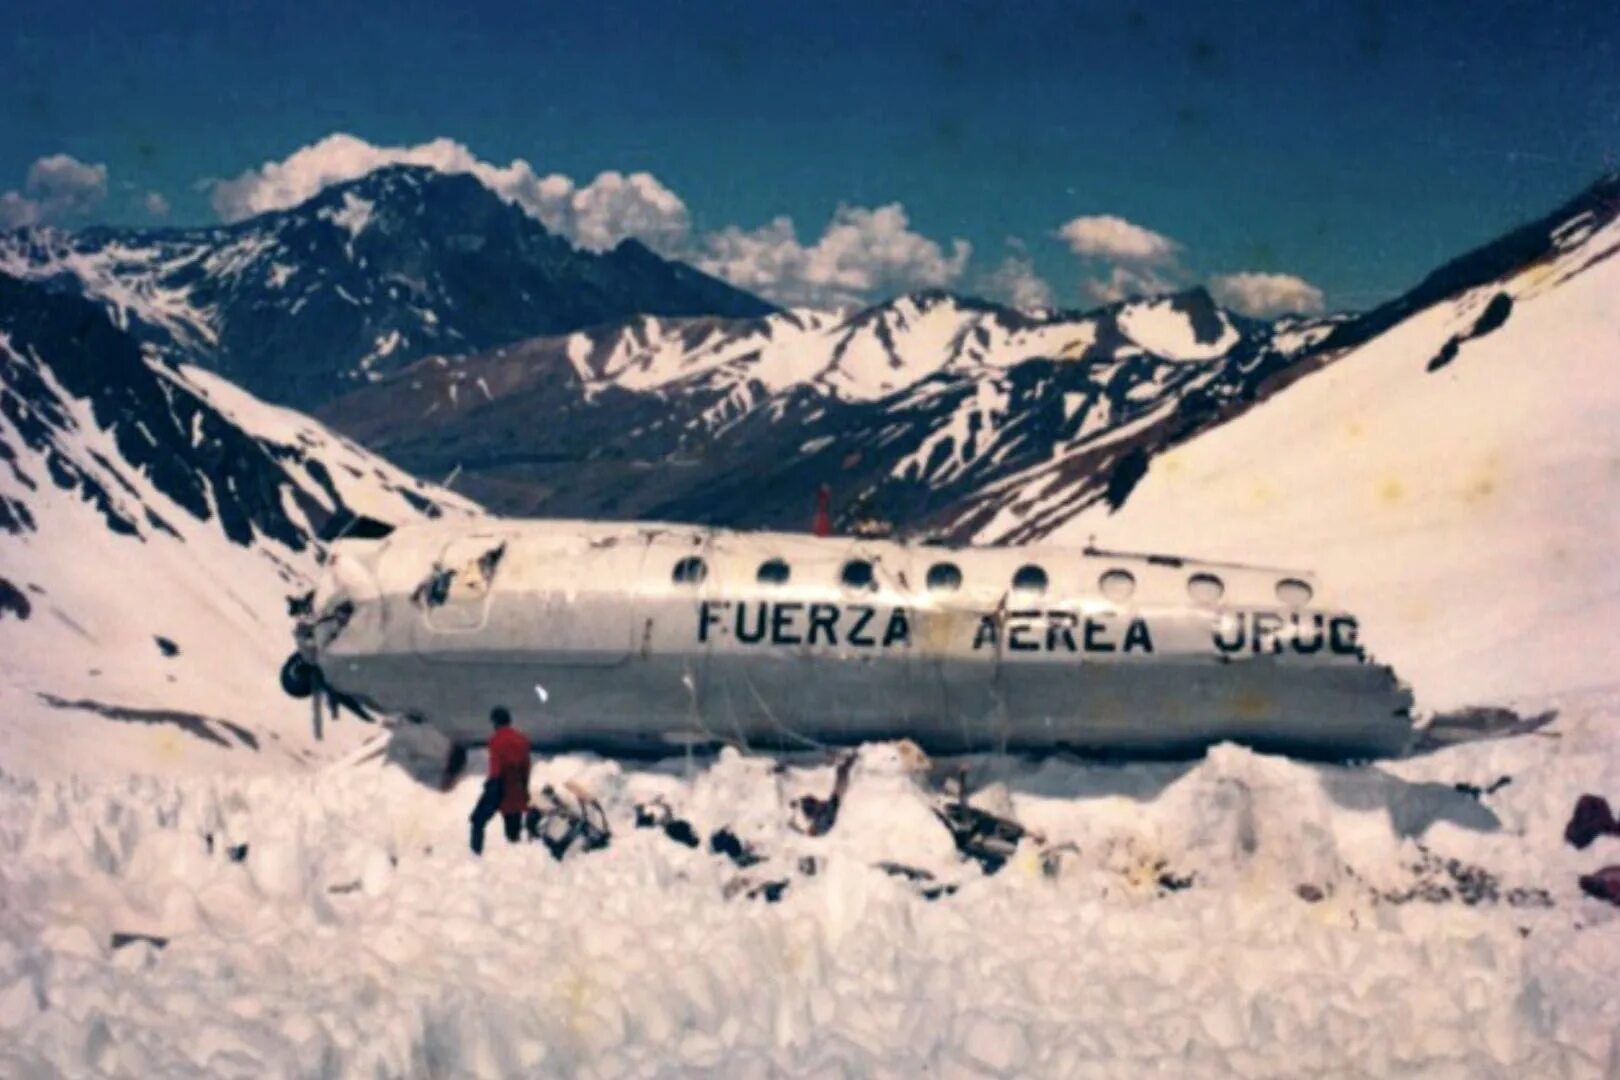 Самолет разбившийся в Андах в 1972. 571 Уругвайских ВВС В Андах. Уругвай авиакатастрофа